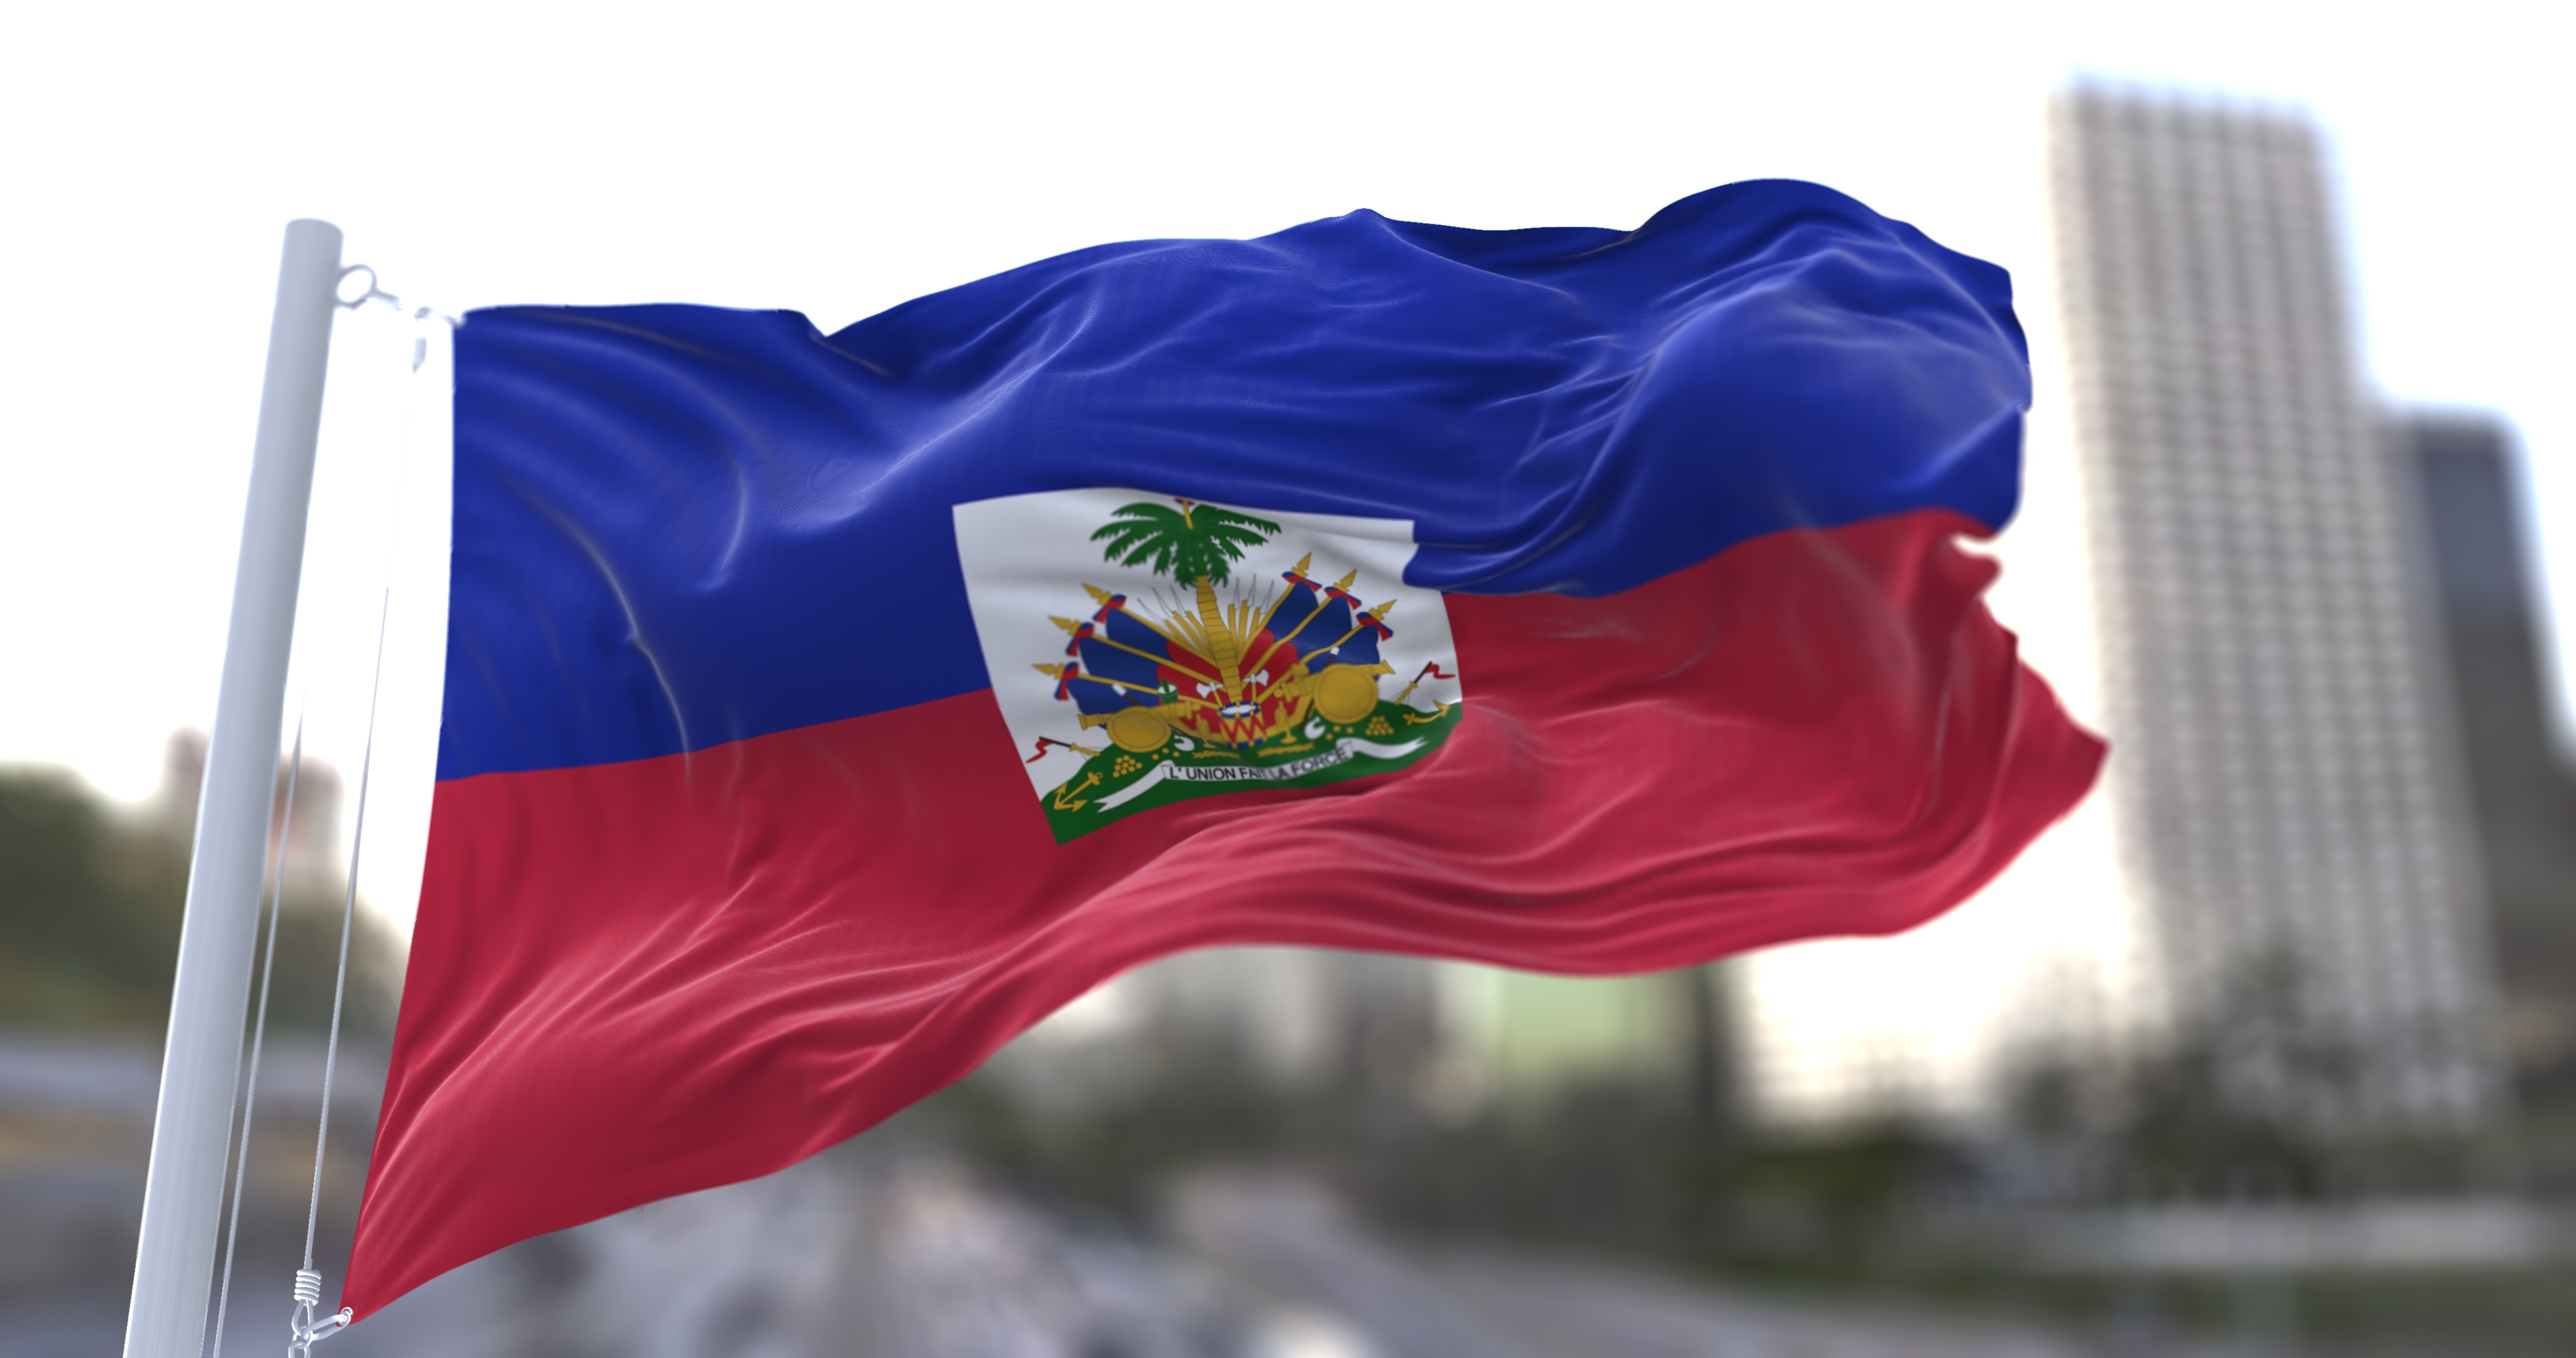     Faim dans le monde: Haïti en alerte maximale, selon l'ONU

